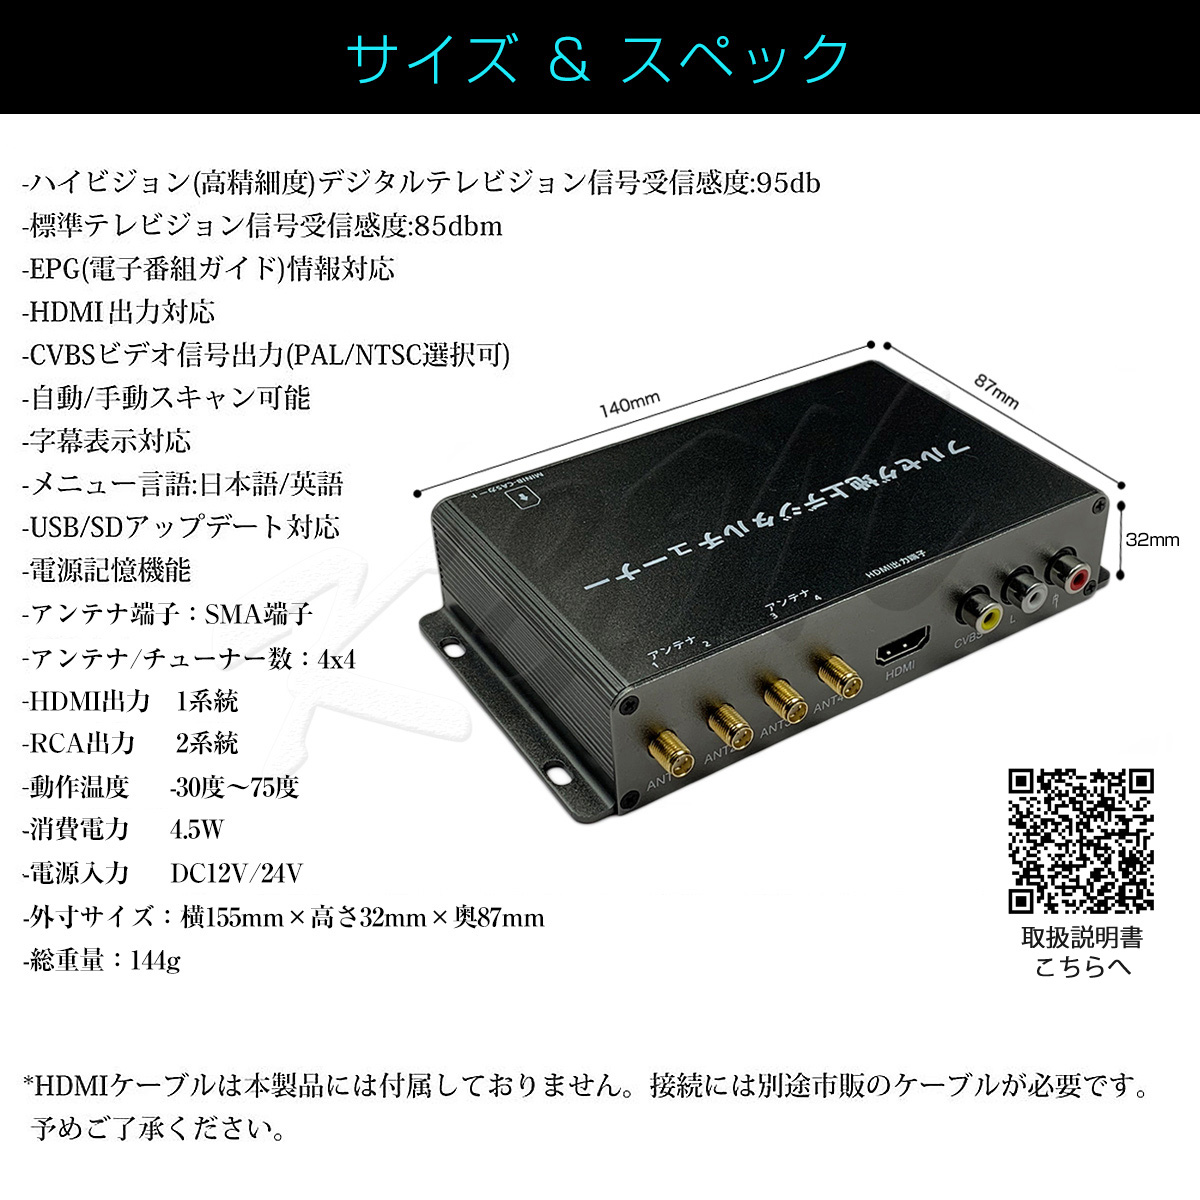 低価HOT NISSAN 4チューナー 4アンテナ 高画質 自動切換 150km/hまで受信 古い車載TVやカーナビにも使える 12V/24V フィルムアンテナ m ティアナ 地デジチューナー カーナビ ワンセグ フルセグ HDMI 4x4 高性能 正規品即納